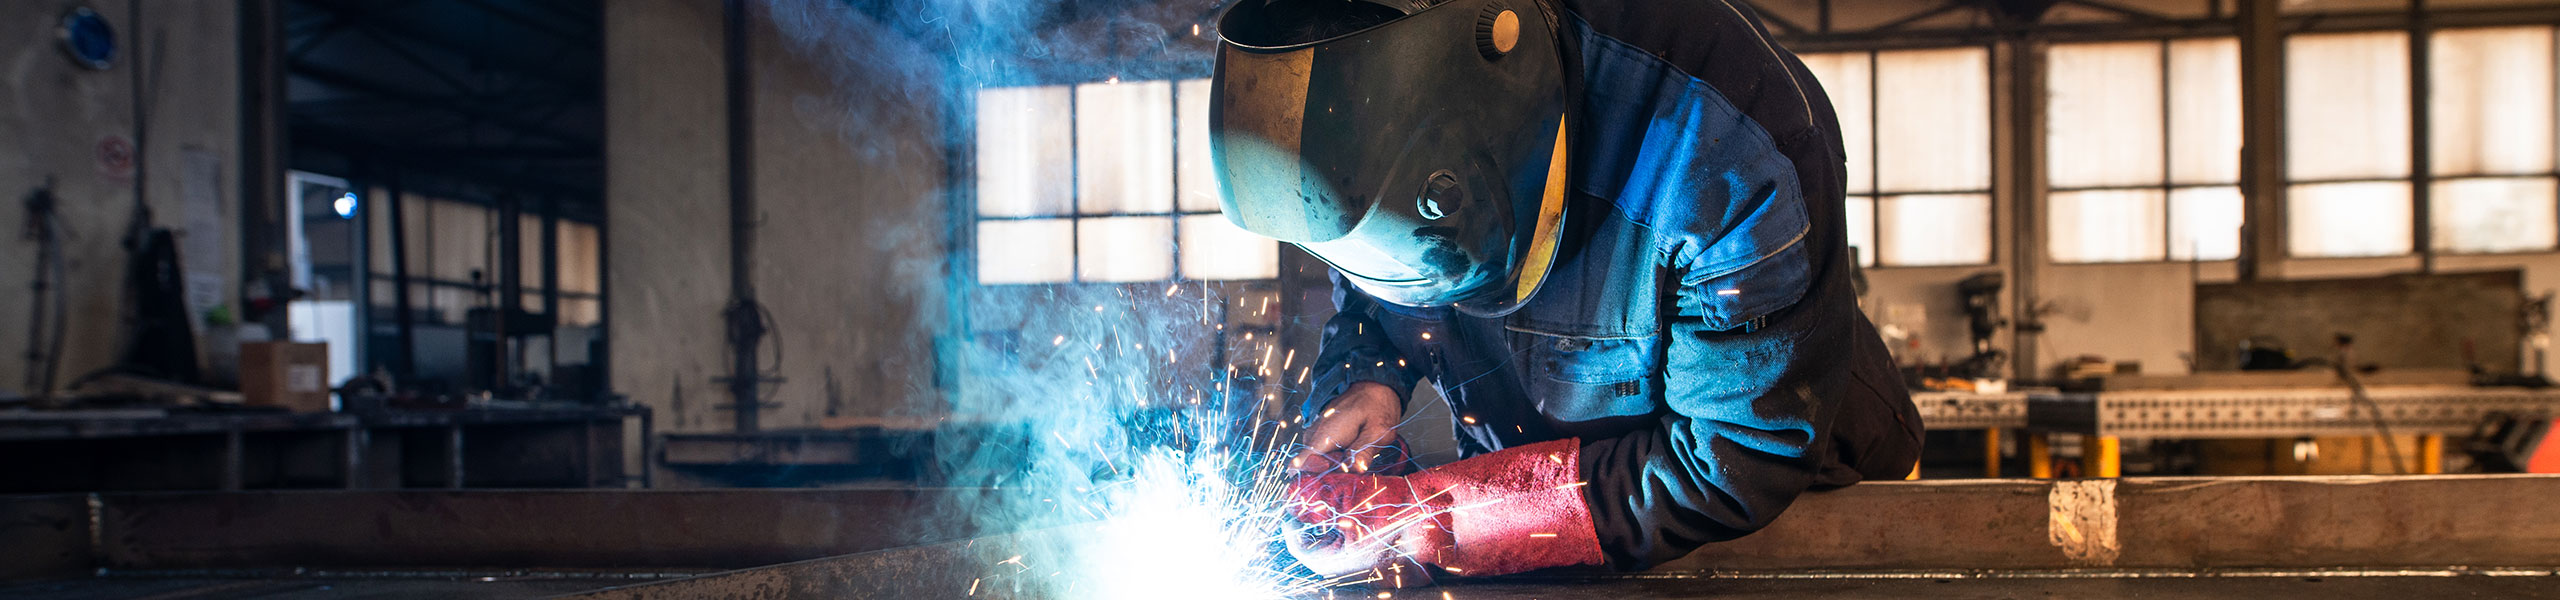 Professional industrial welder welding metal parts in a metalworking factory